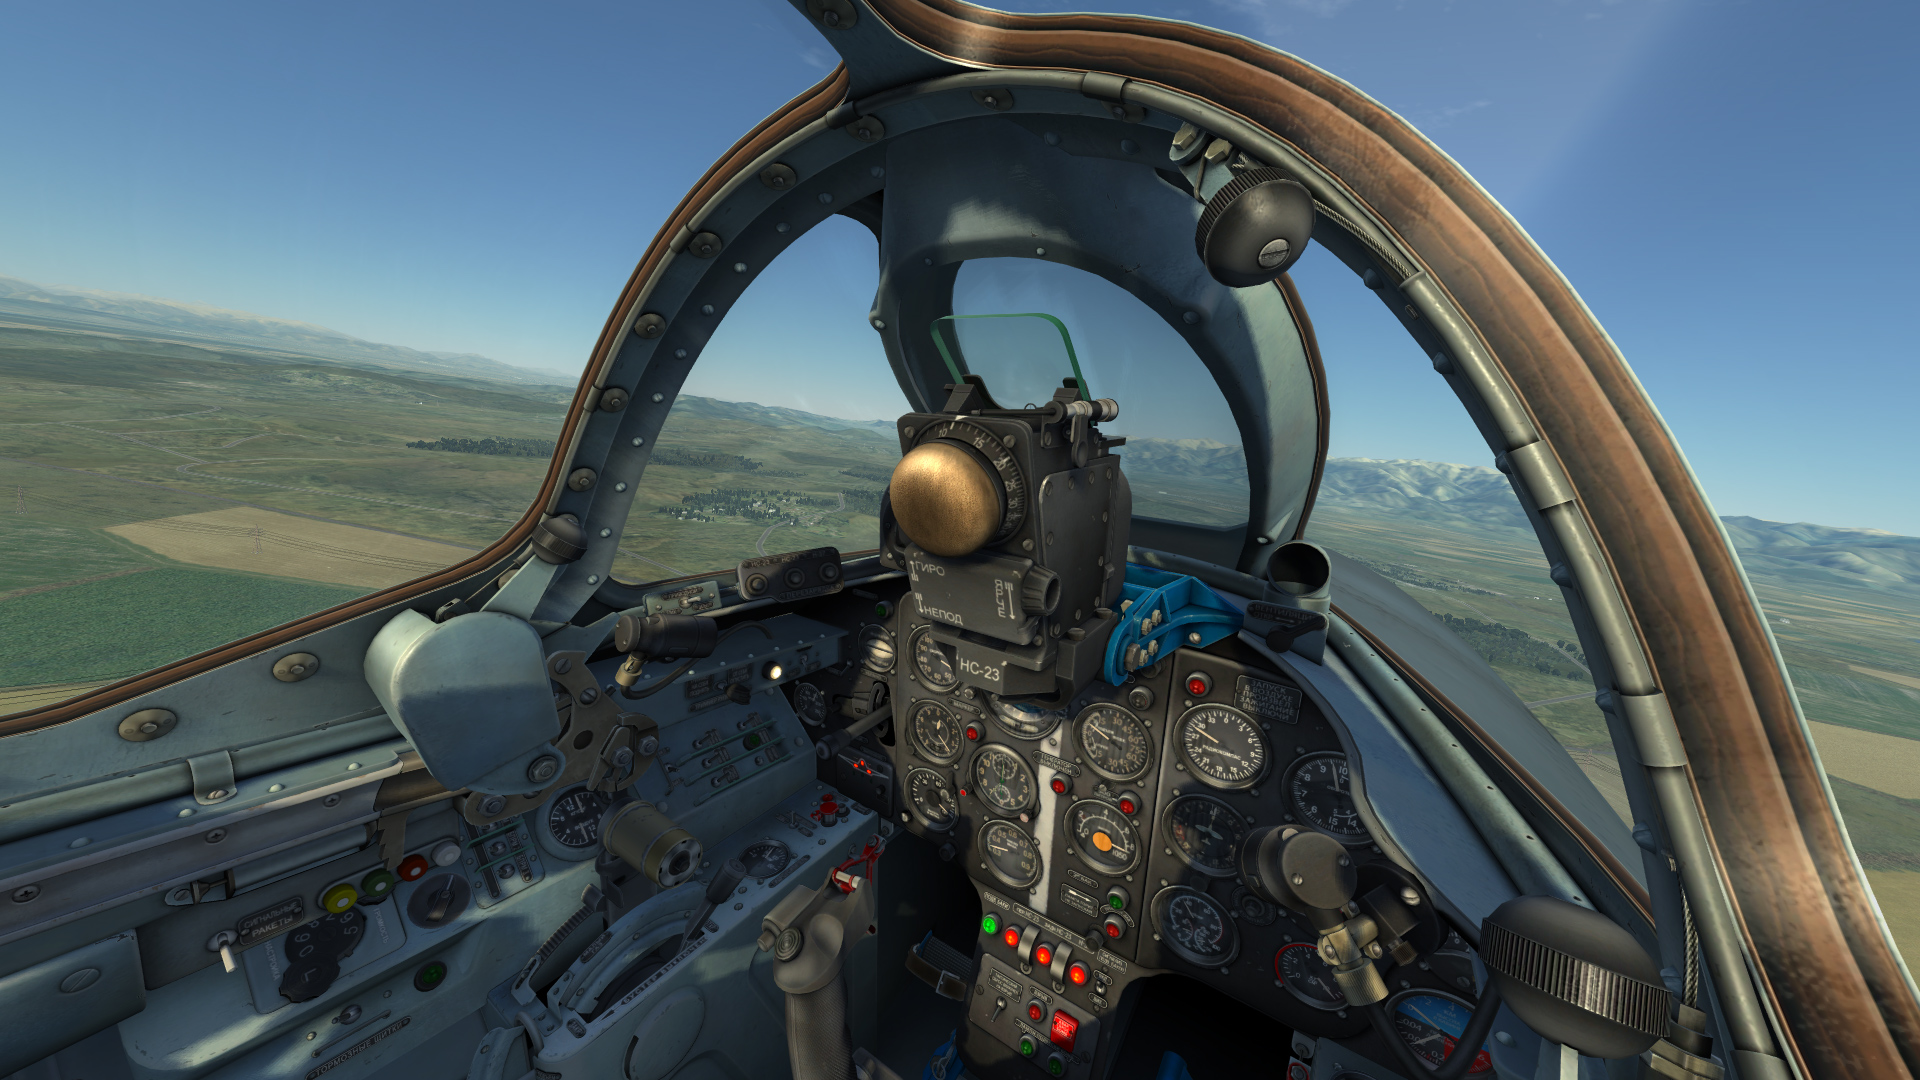 DCS: MiG-15bis